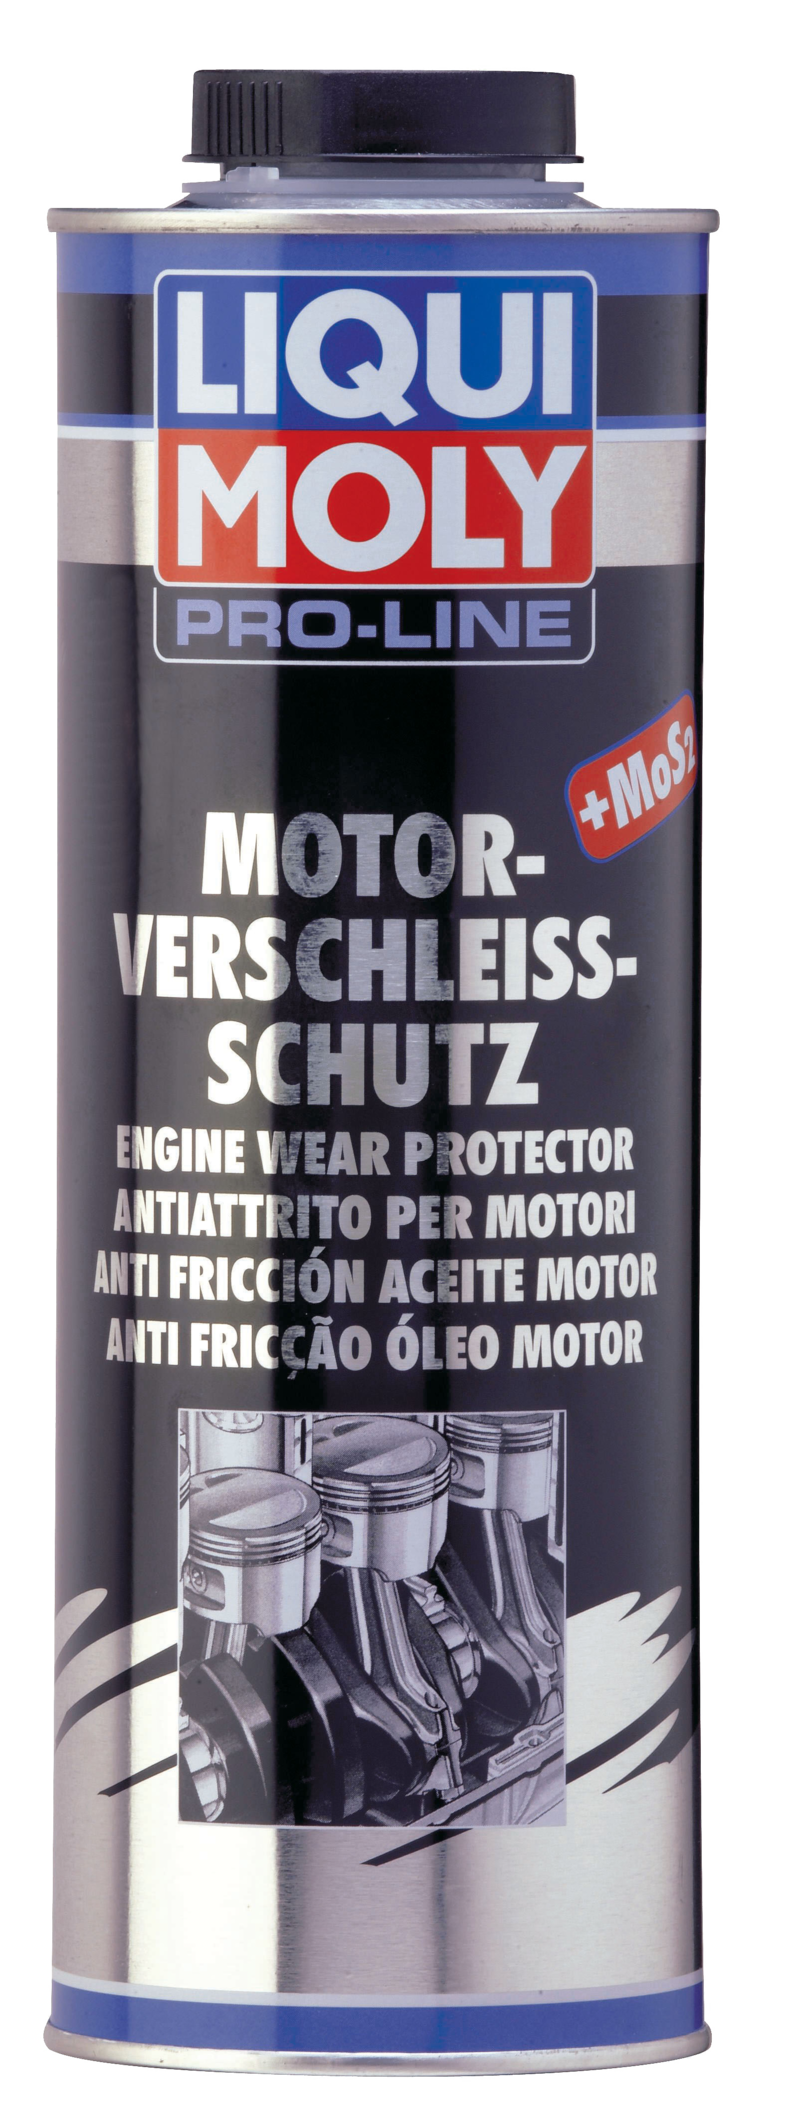 Pro-Line Anti fricción aceite motor (1 L) Liqui Moly